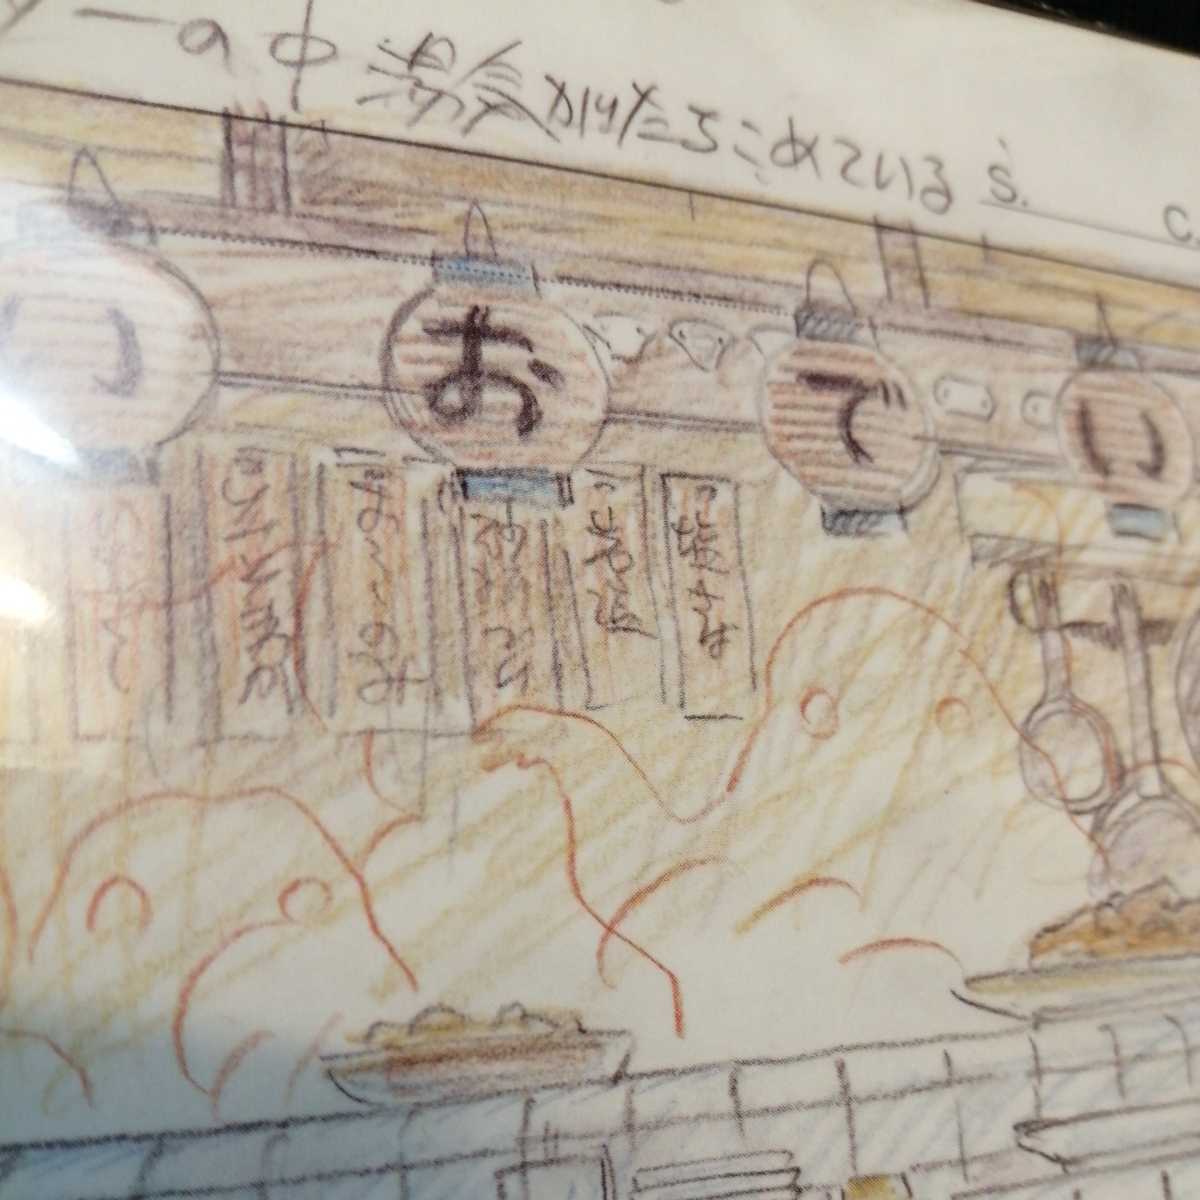  Studio Ghibli тысяч . тысяч .. бог .. расположение порез . осмотр ) Ghibli открытка постер исходная картина цифровая картинка расположение выставка Miyazaki .j